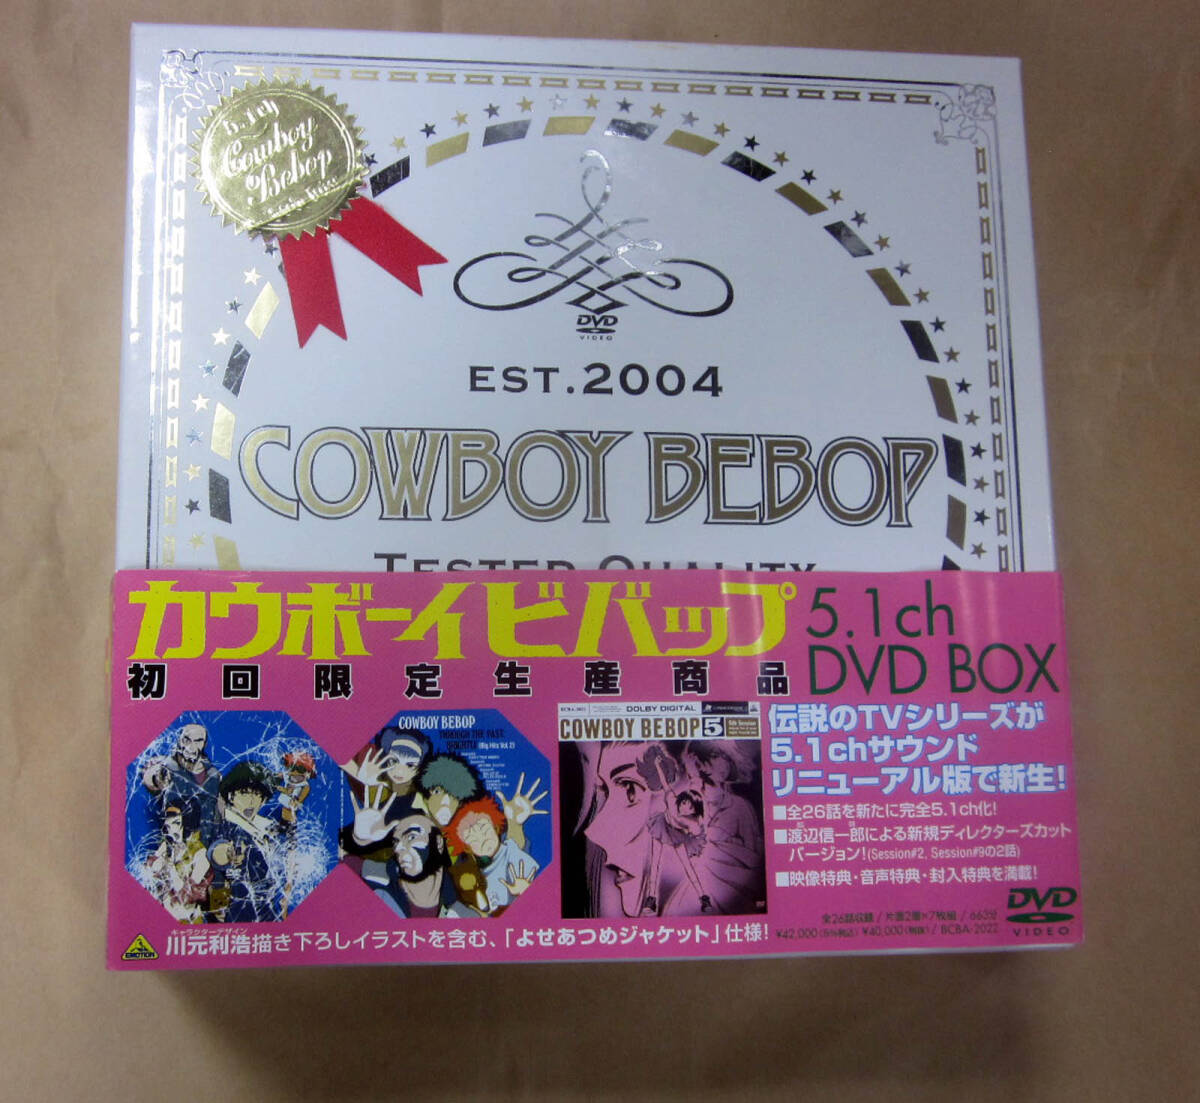  Cowboy Bebop cowboy bebop 5.1ch DVD-BOX